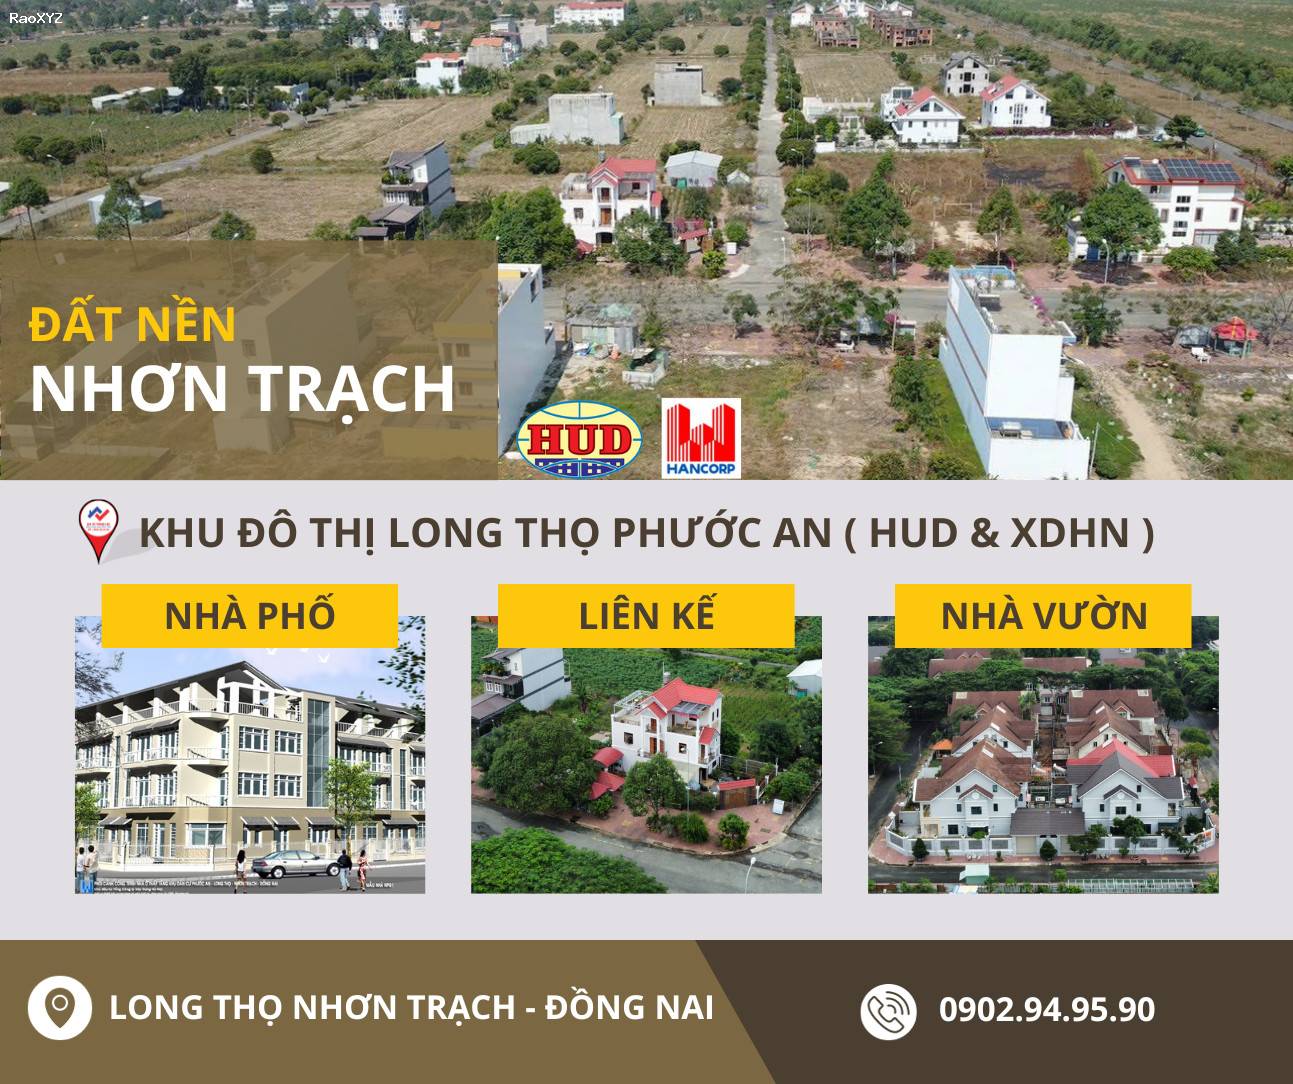 Đầu tư đất nền tiềm năng tại Nhơn Trạch cửa ngõ sân bay Long Thành